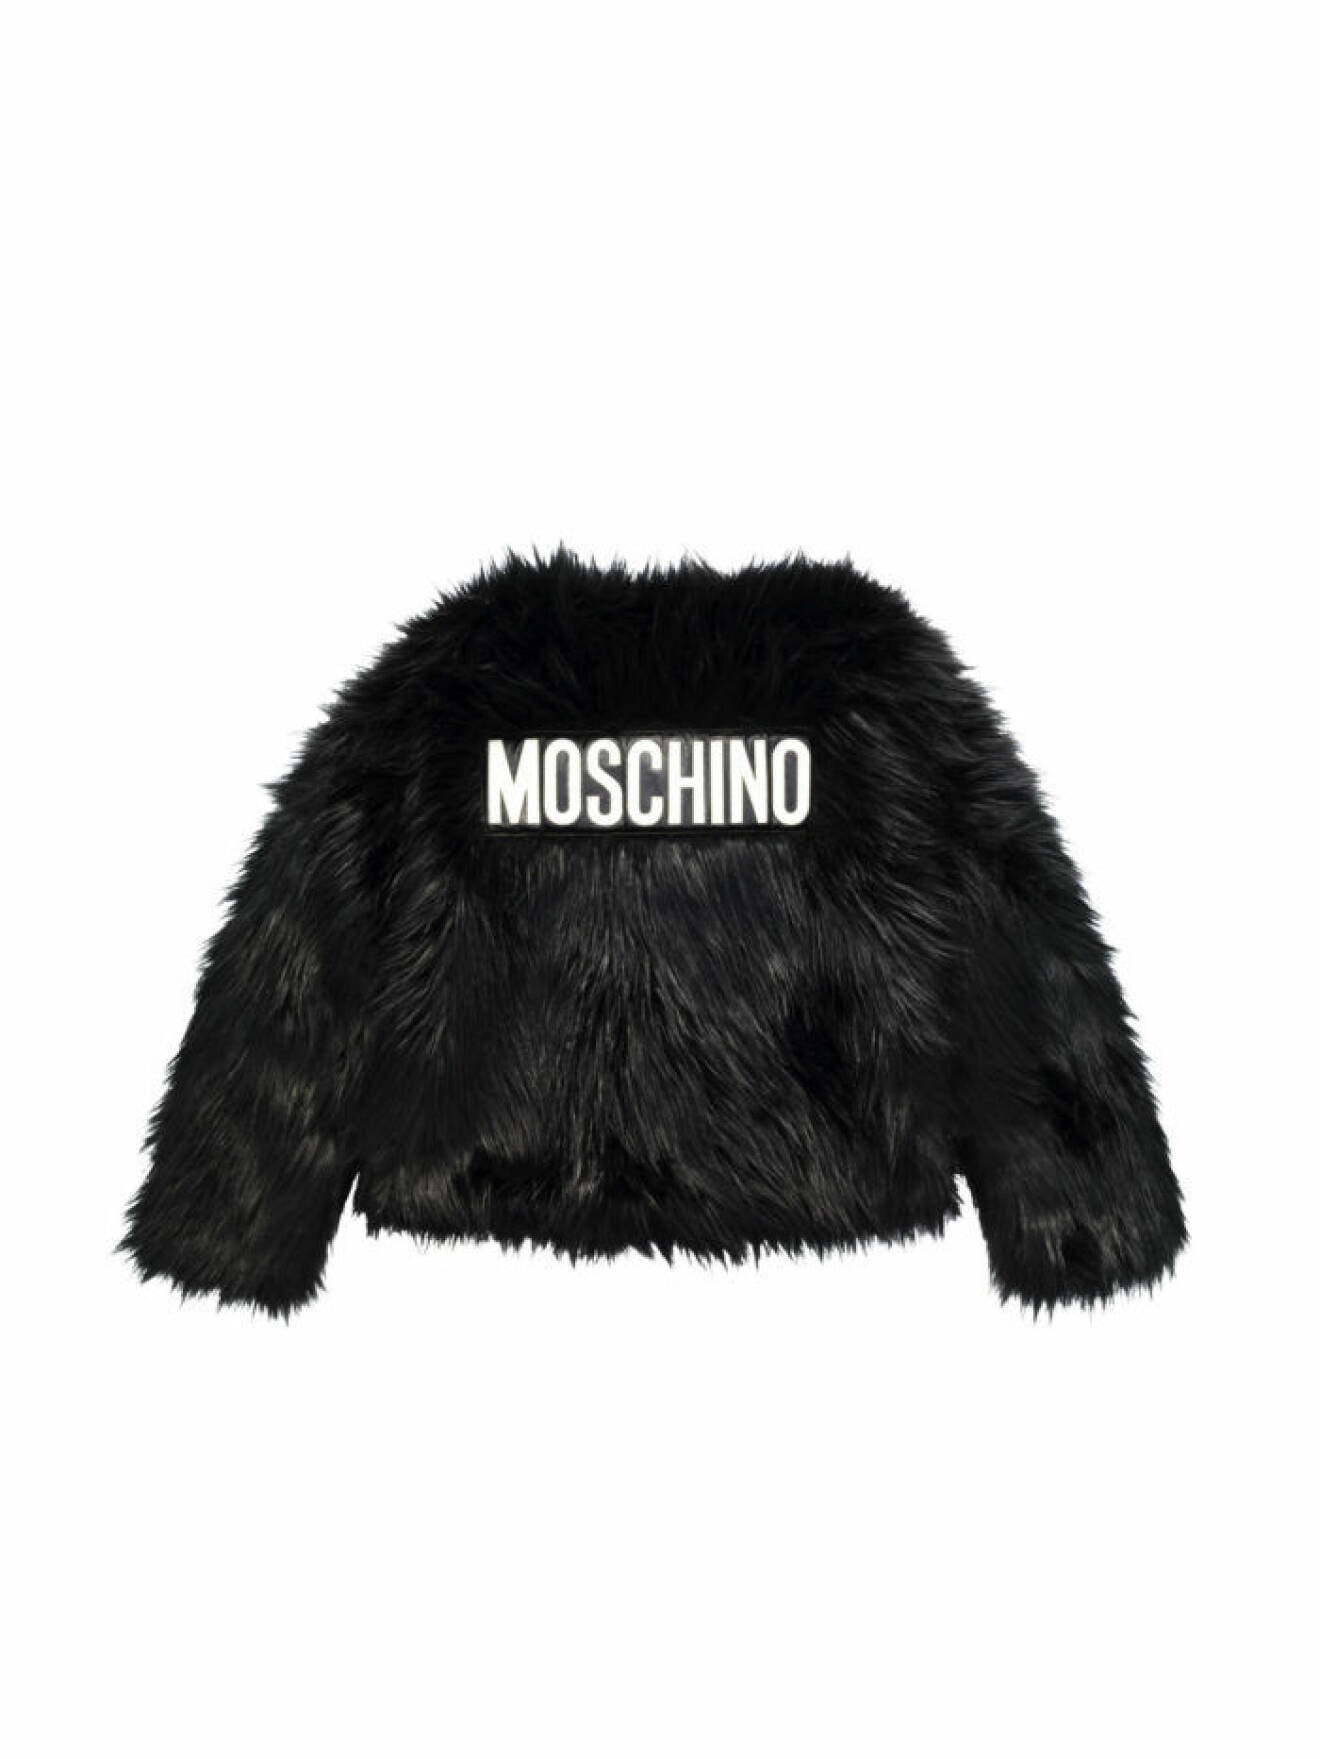 Svart kort fuskpäls med Moschino-logo på ryggen Moschino [tv] H&M